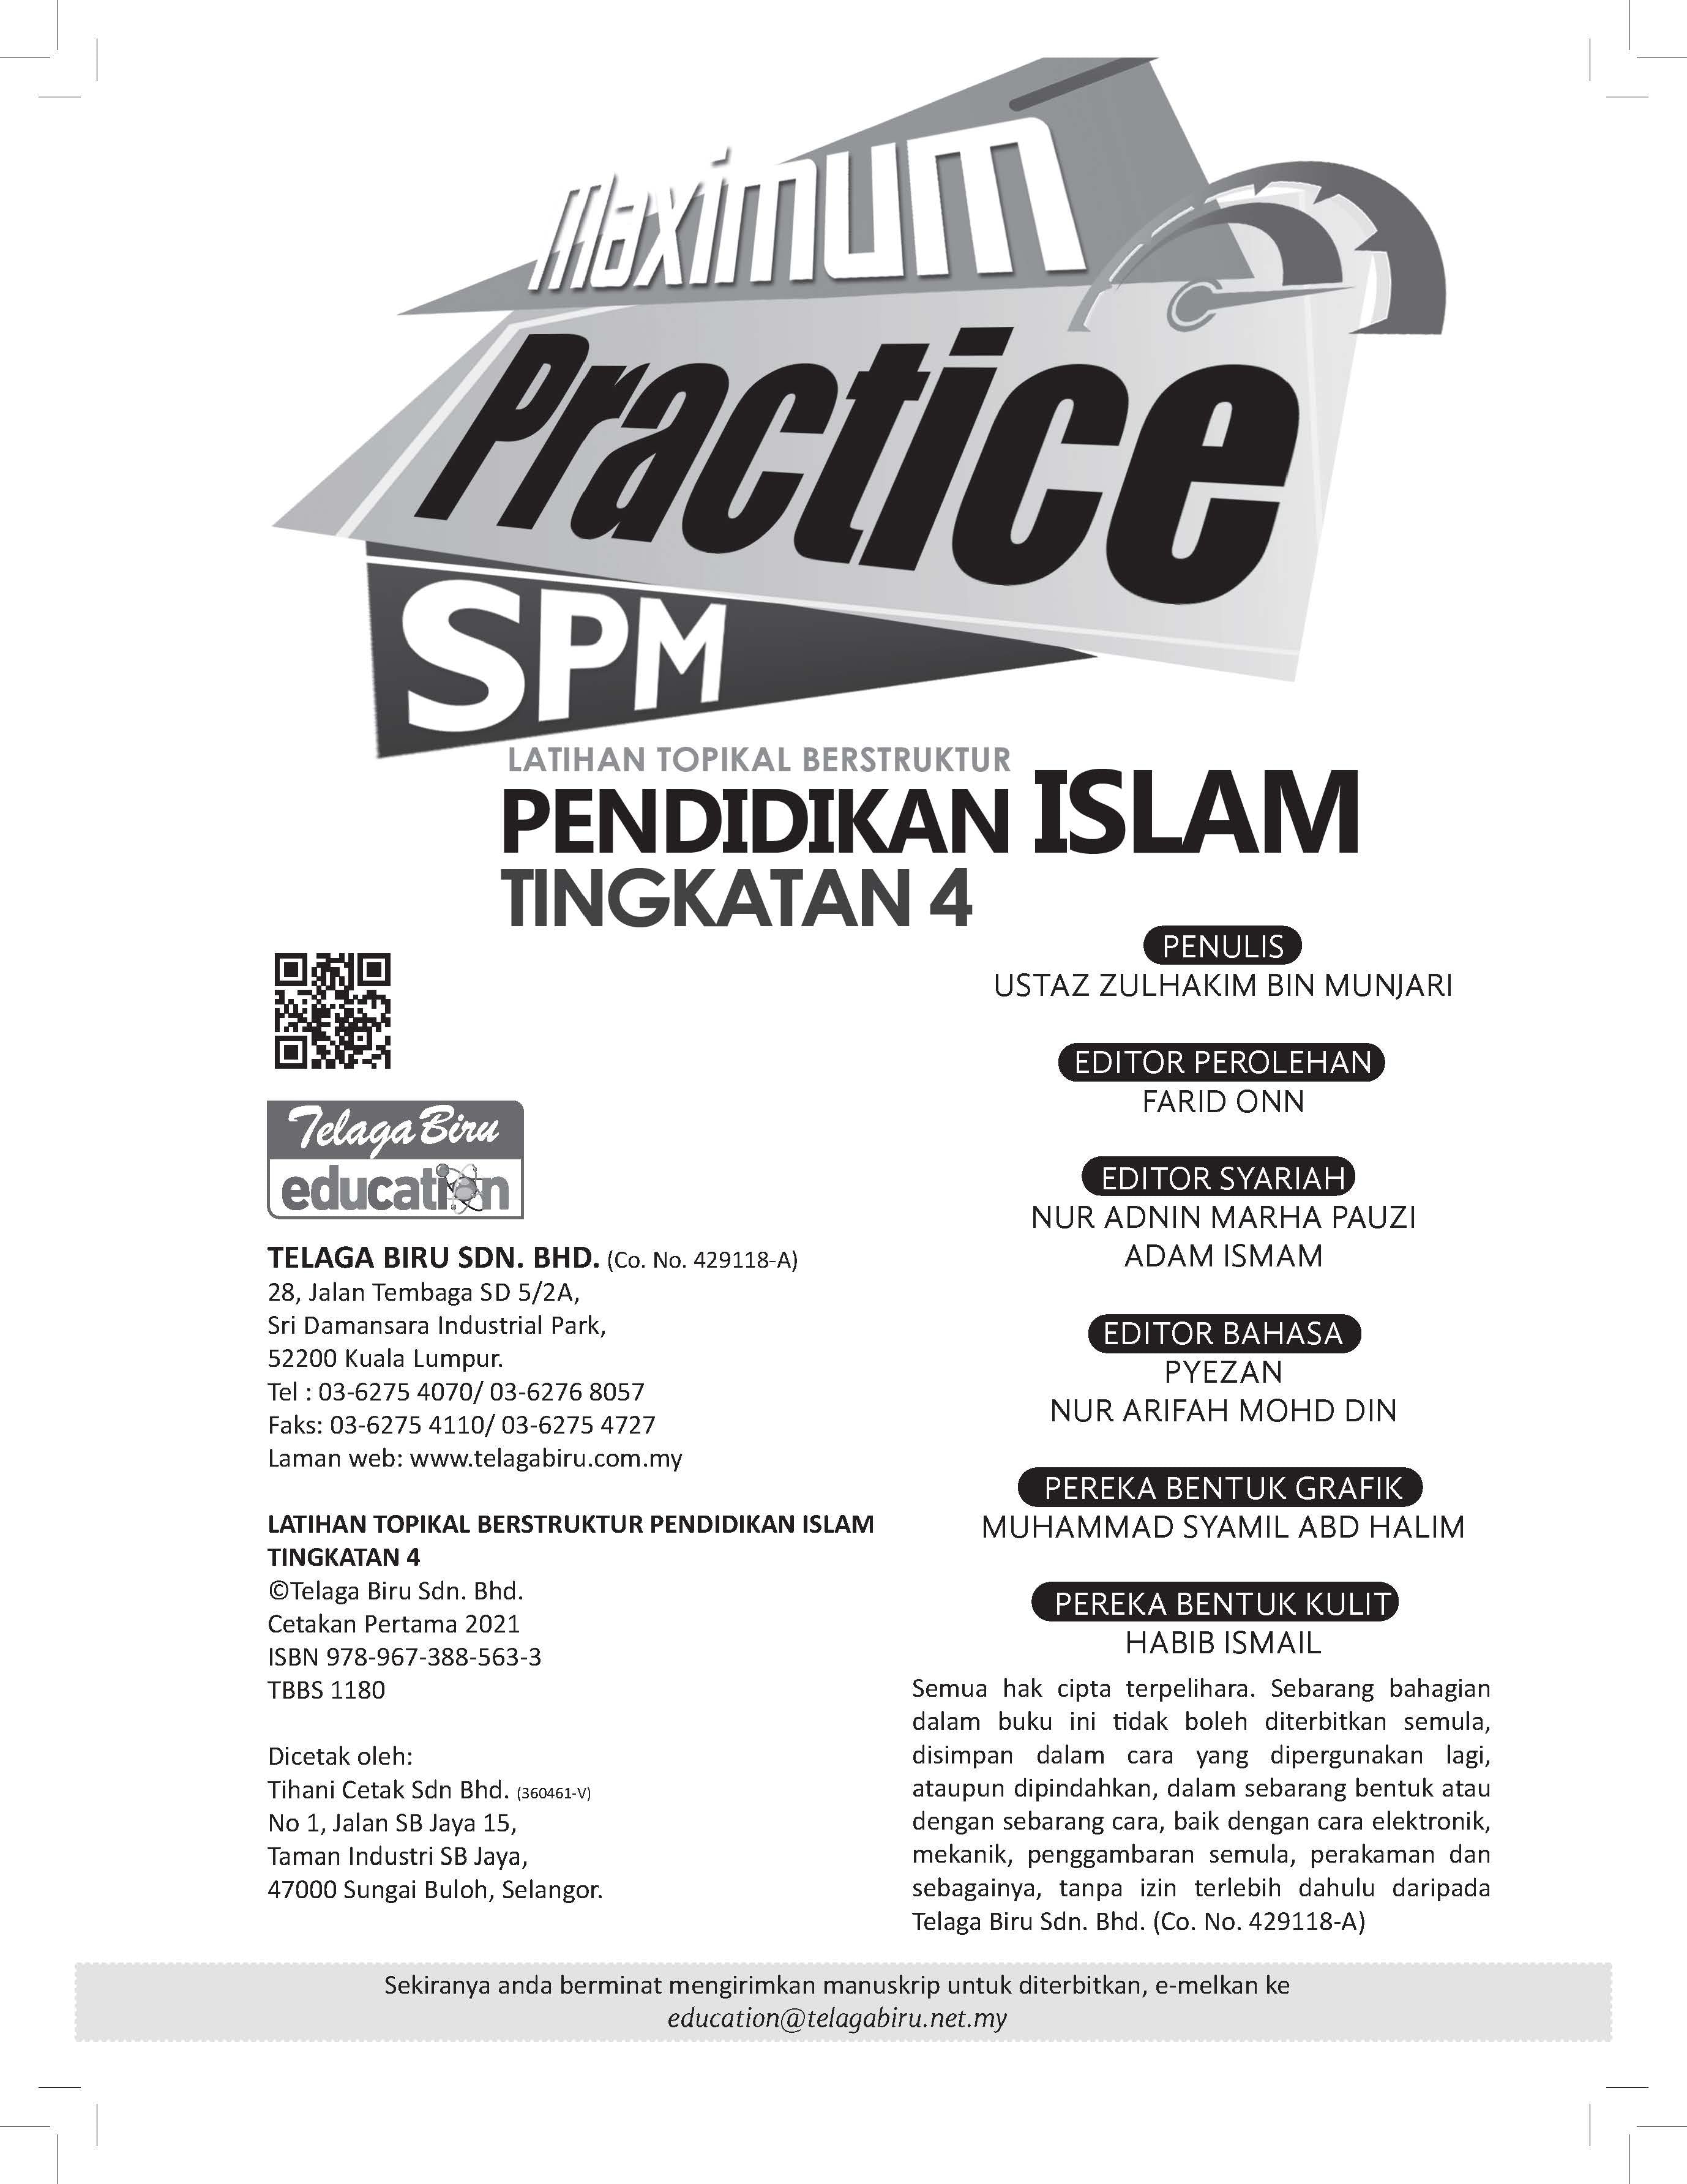 Practice Maximum SPM - Latihan Topikal Berstruktur Pendidikan Islam Tingkatan 4 - (TBBS1180)